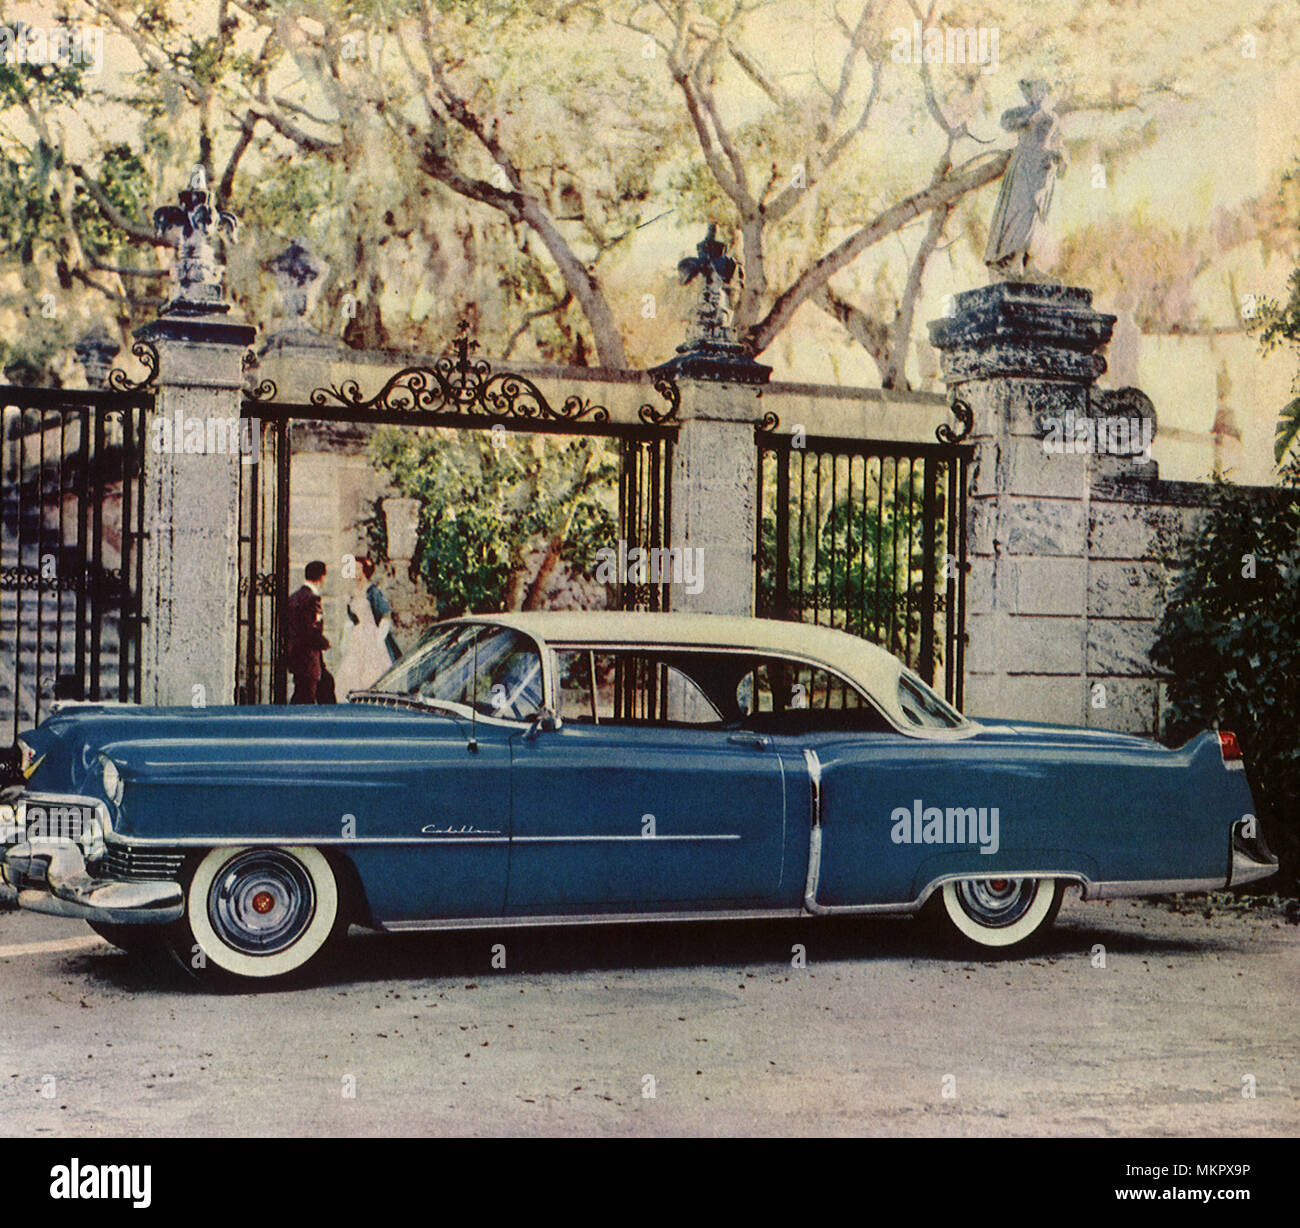 1954 Cadillac Stock Photo